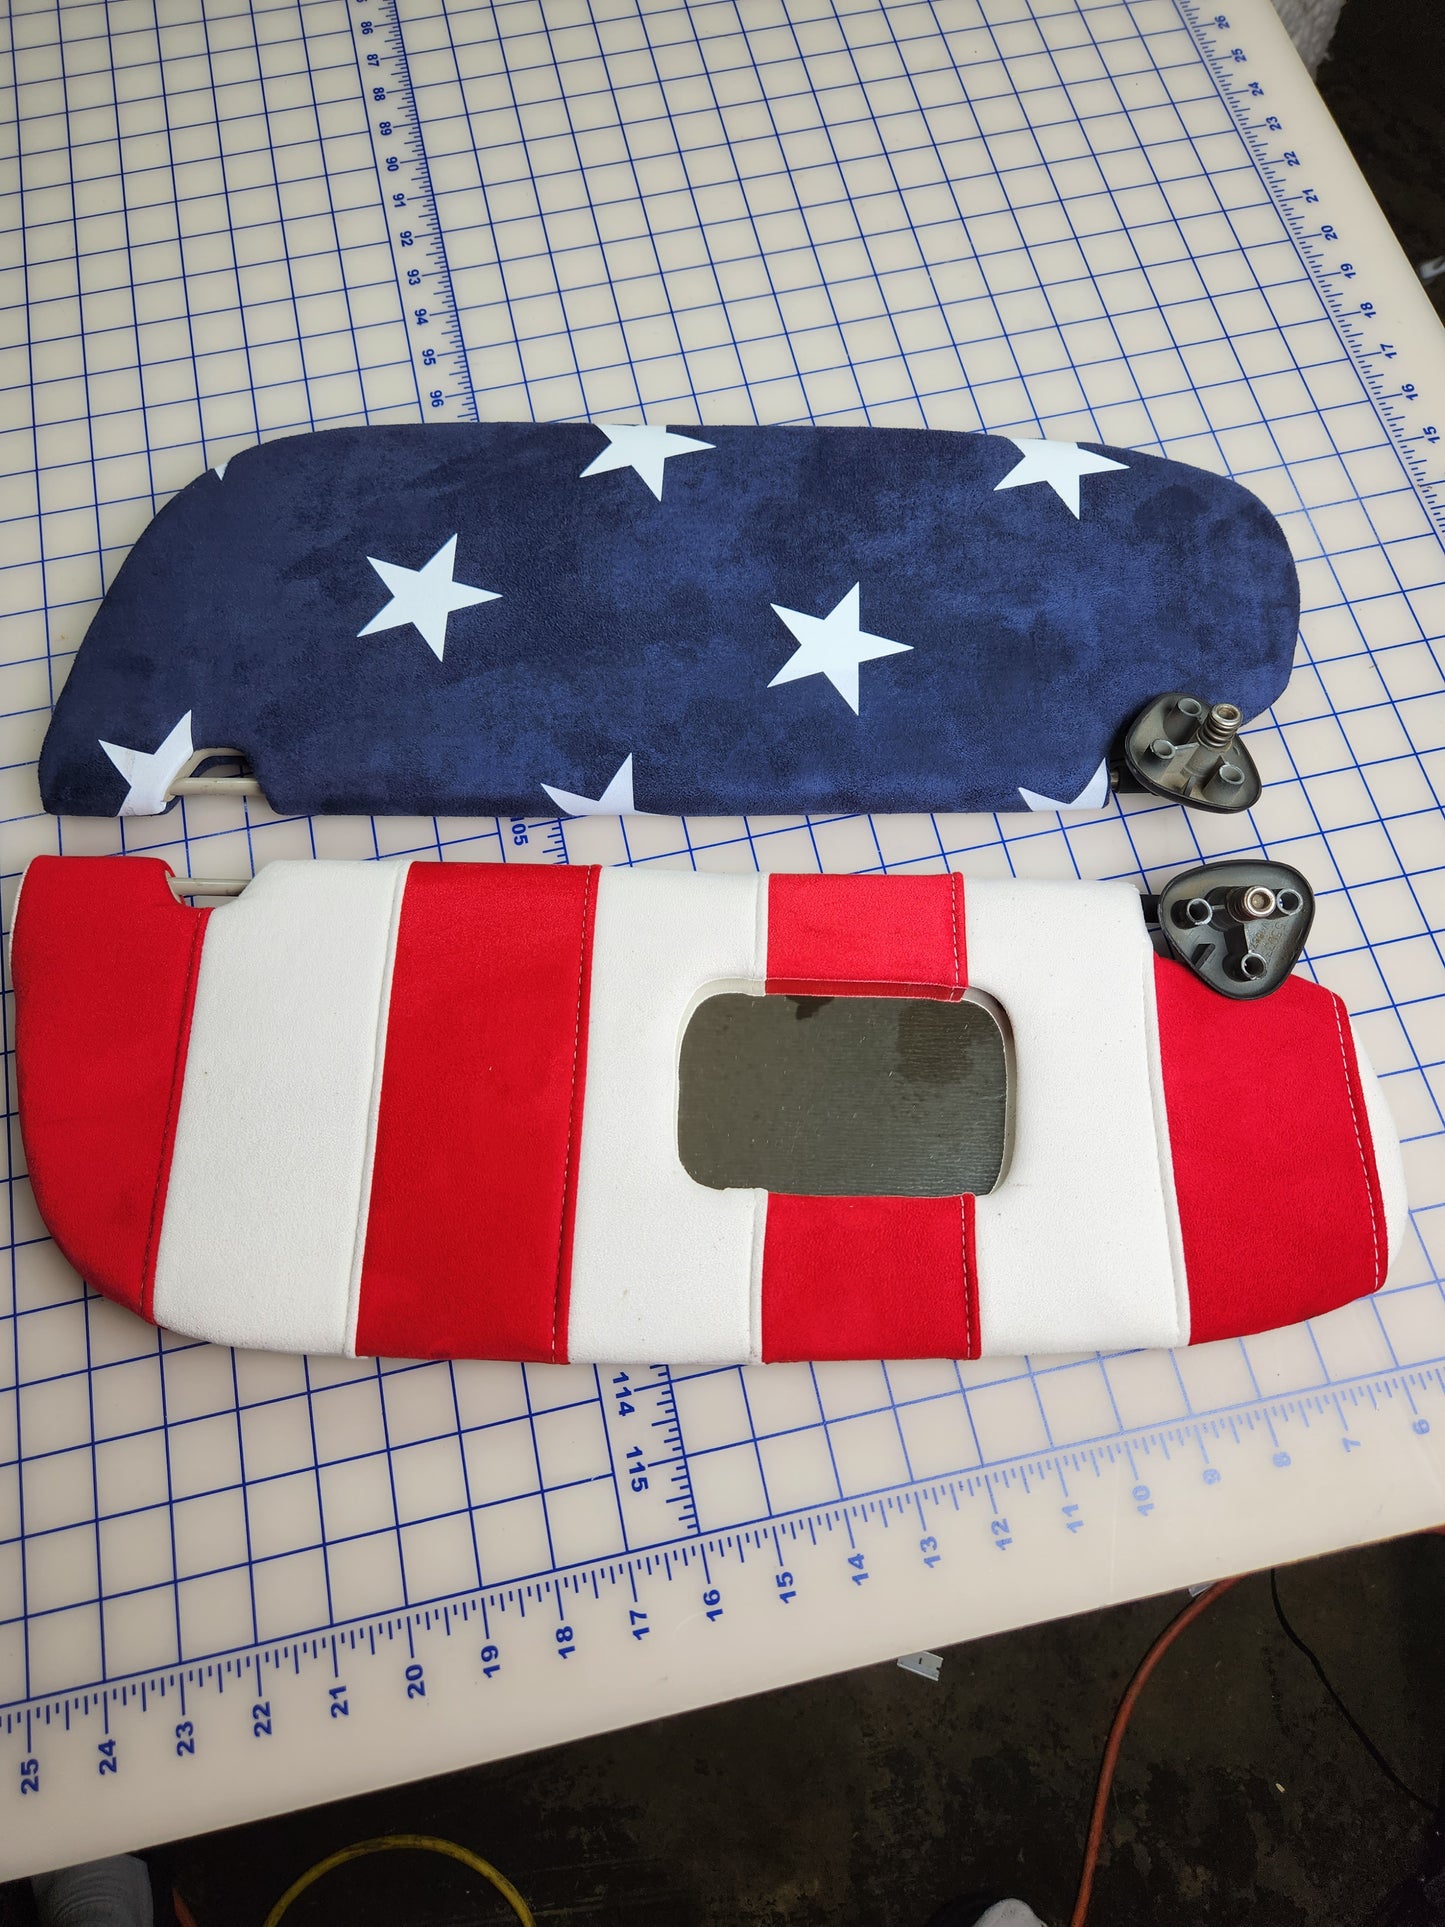 Suede American Flag Headliner Kit for Crew / Quad Cab Trucks